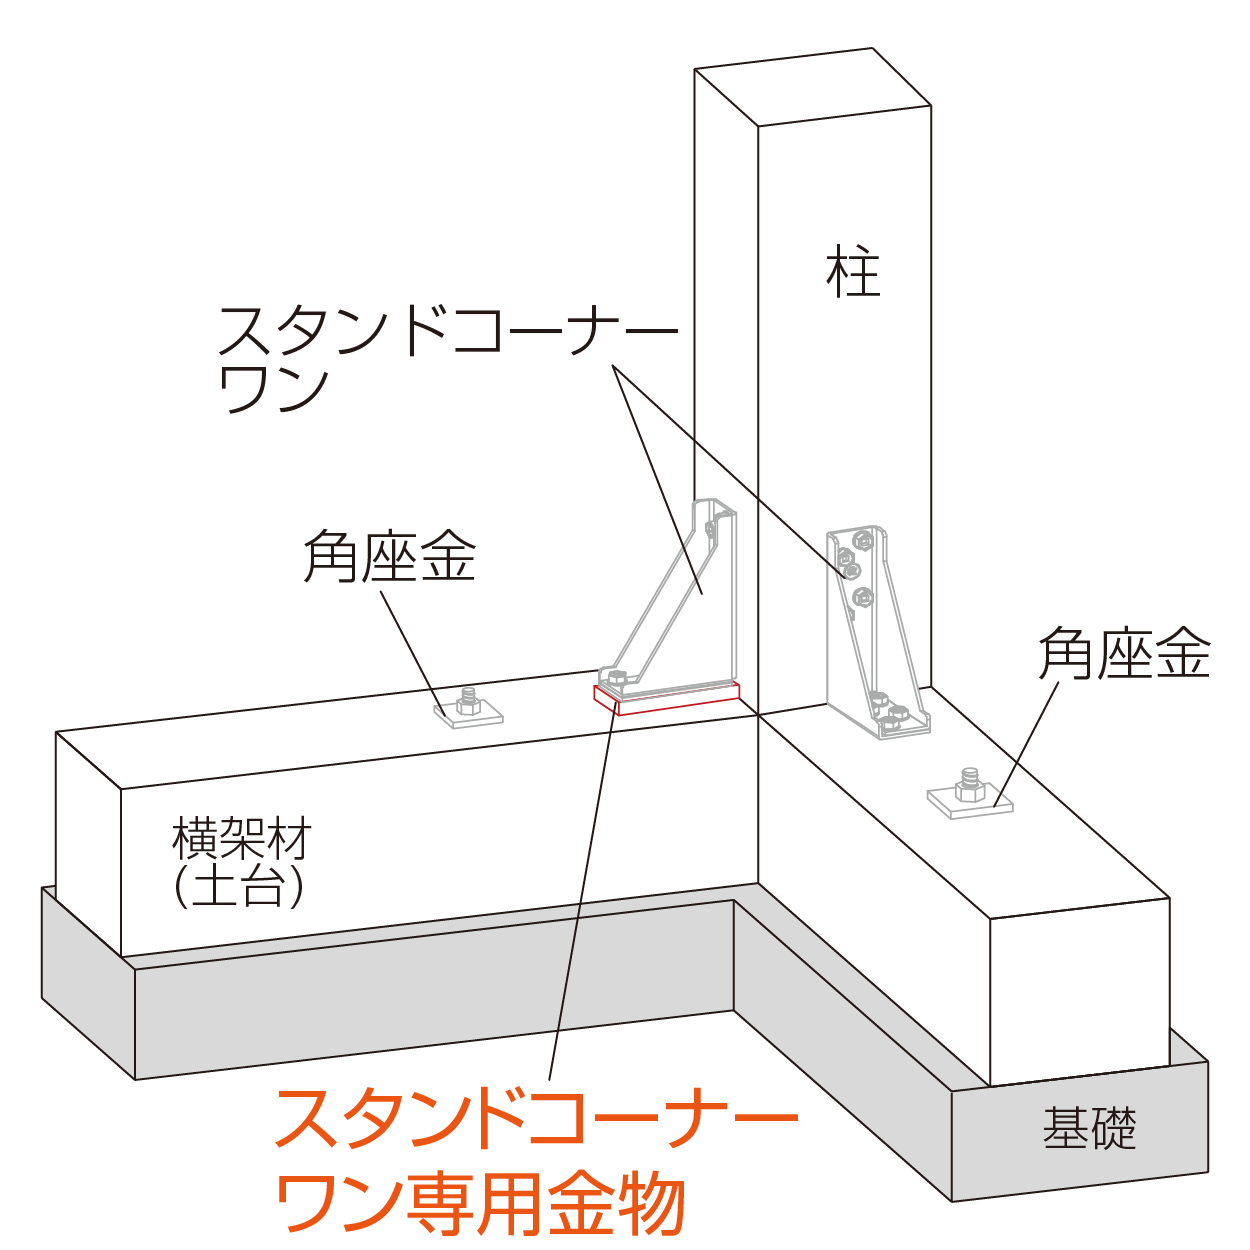 スタンドコーナーワン専用座金 柱脚使用例（隅柱）